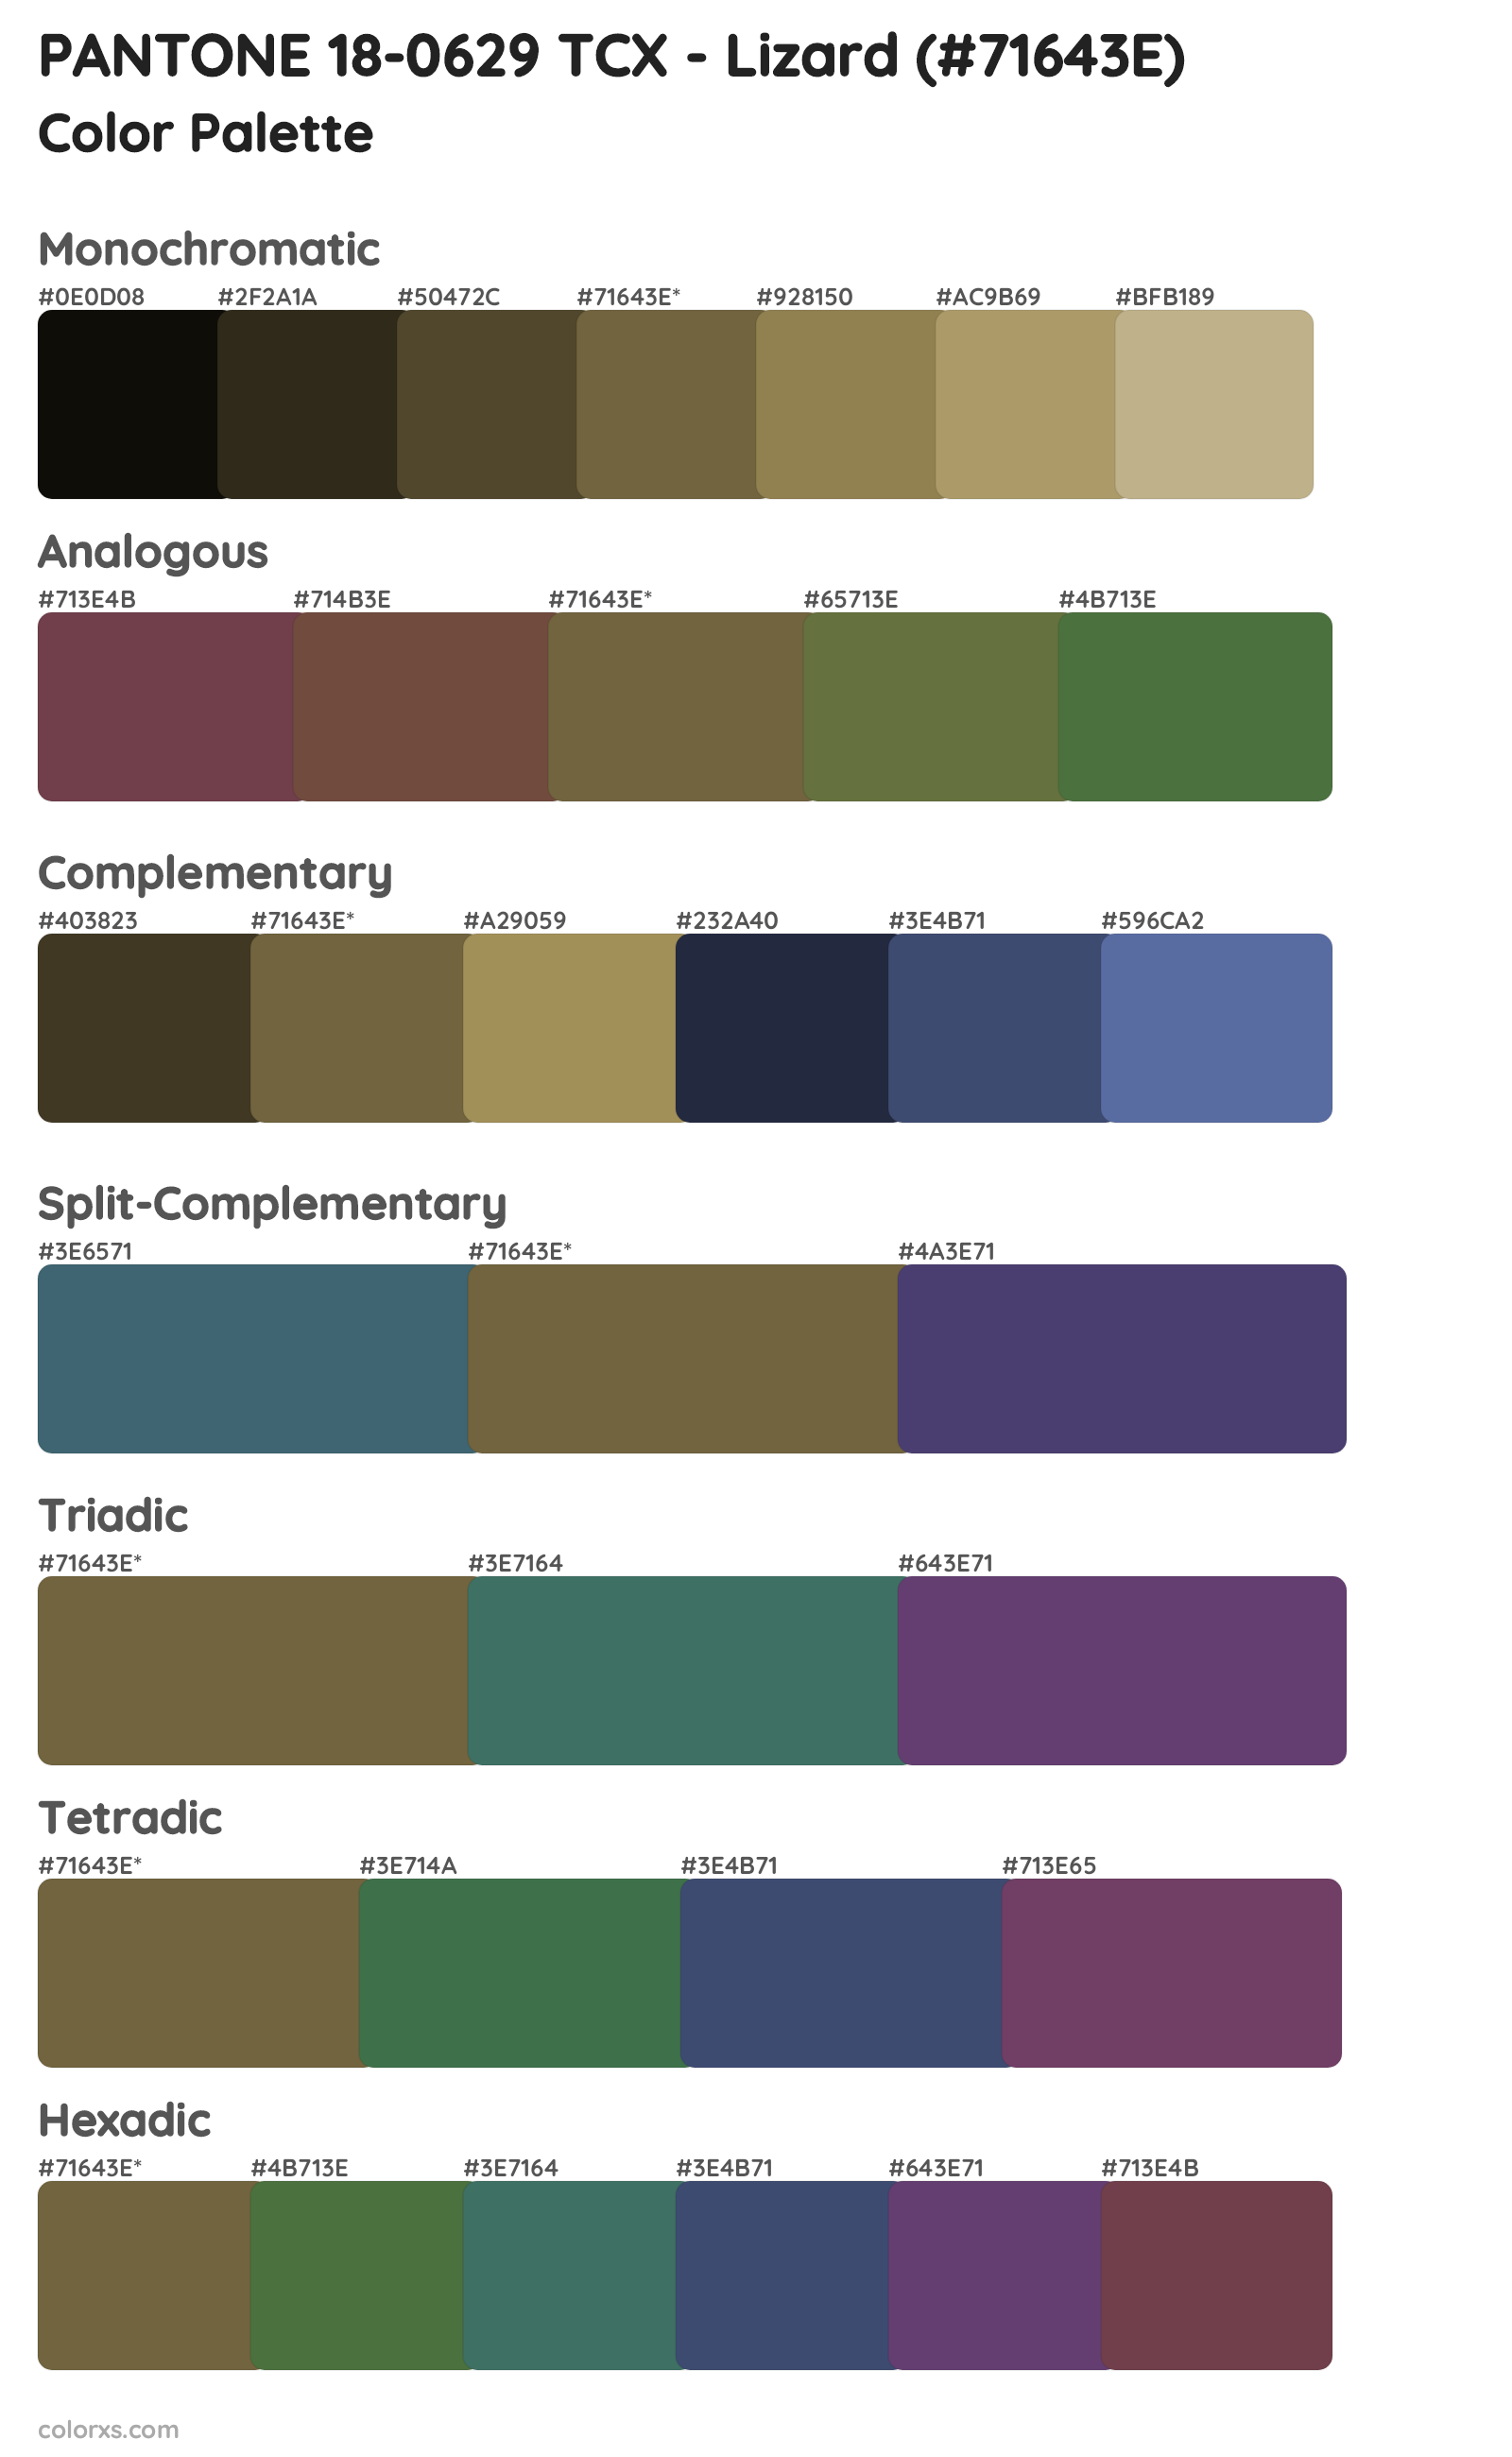 PANTONE 18-0629 TCX - Lizard Color Scheme Palettes